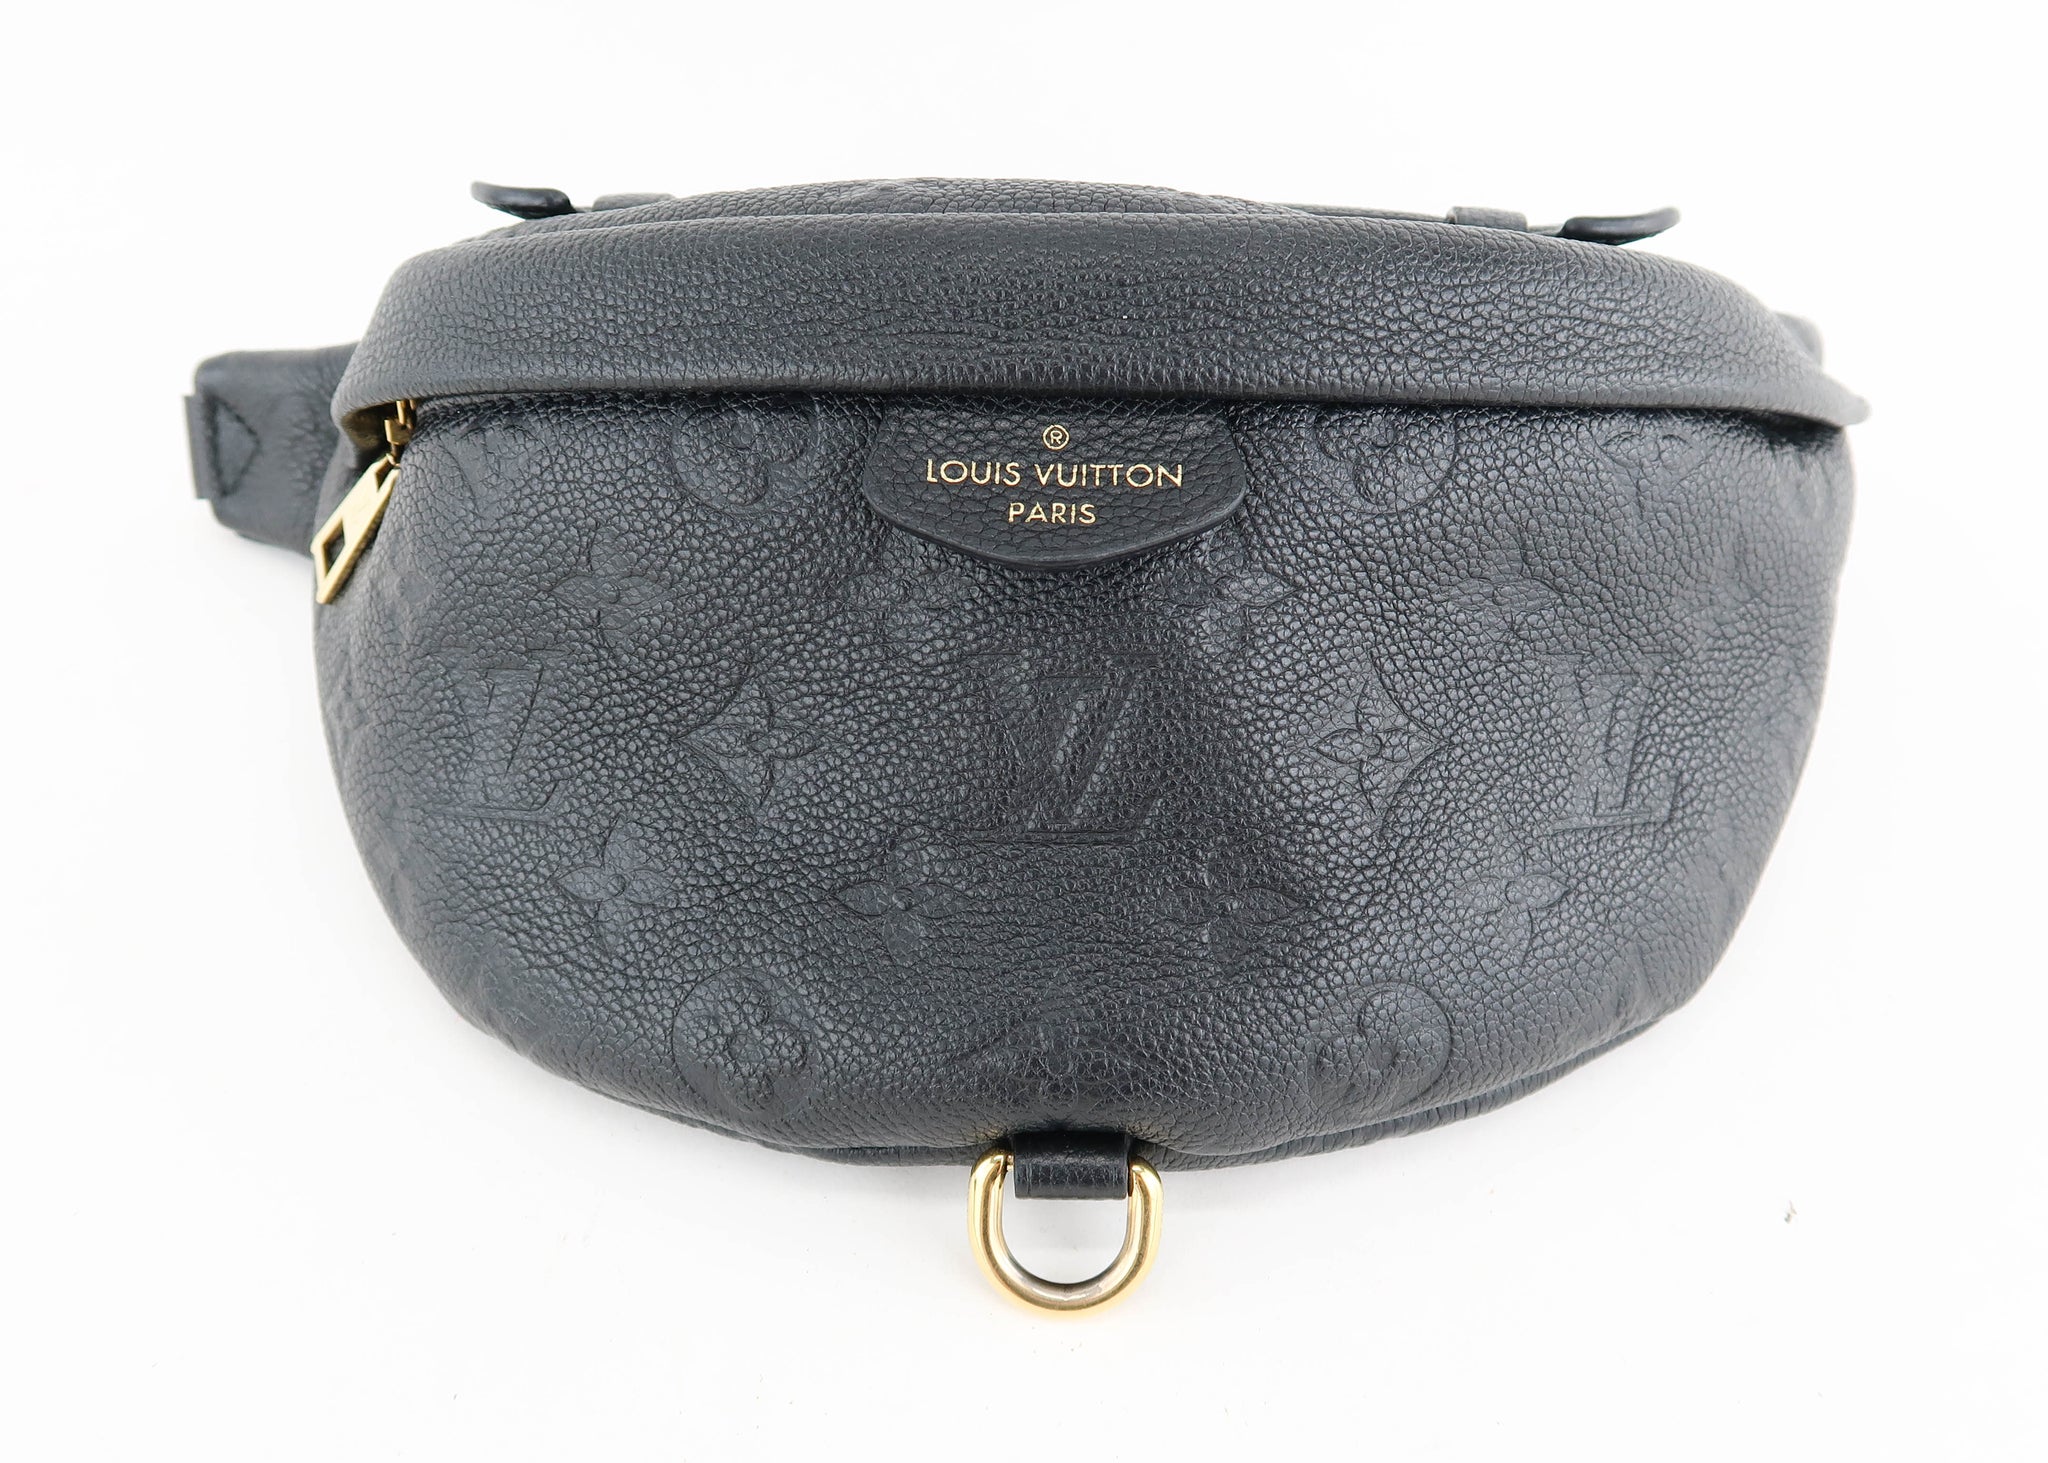 Louis Vuitton, Bags, Soldsoldsold Authentic Louis Vuitton Empreinte Bumbag  Blk W Boxbag